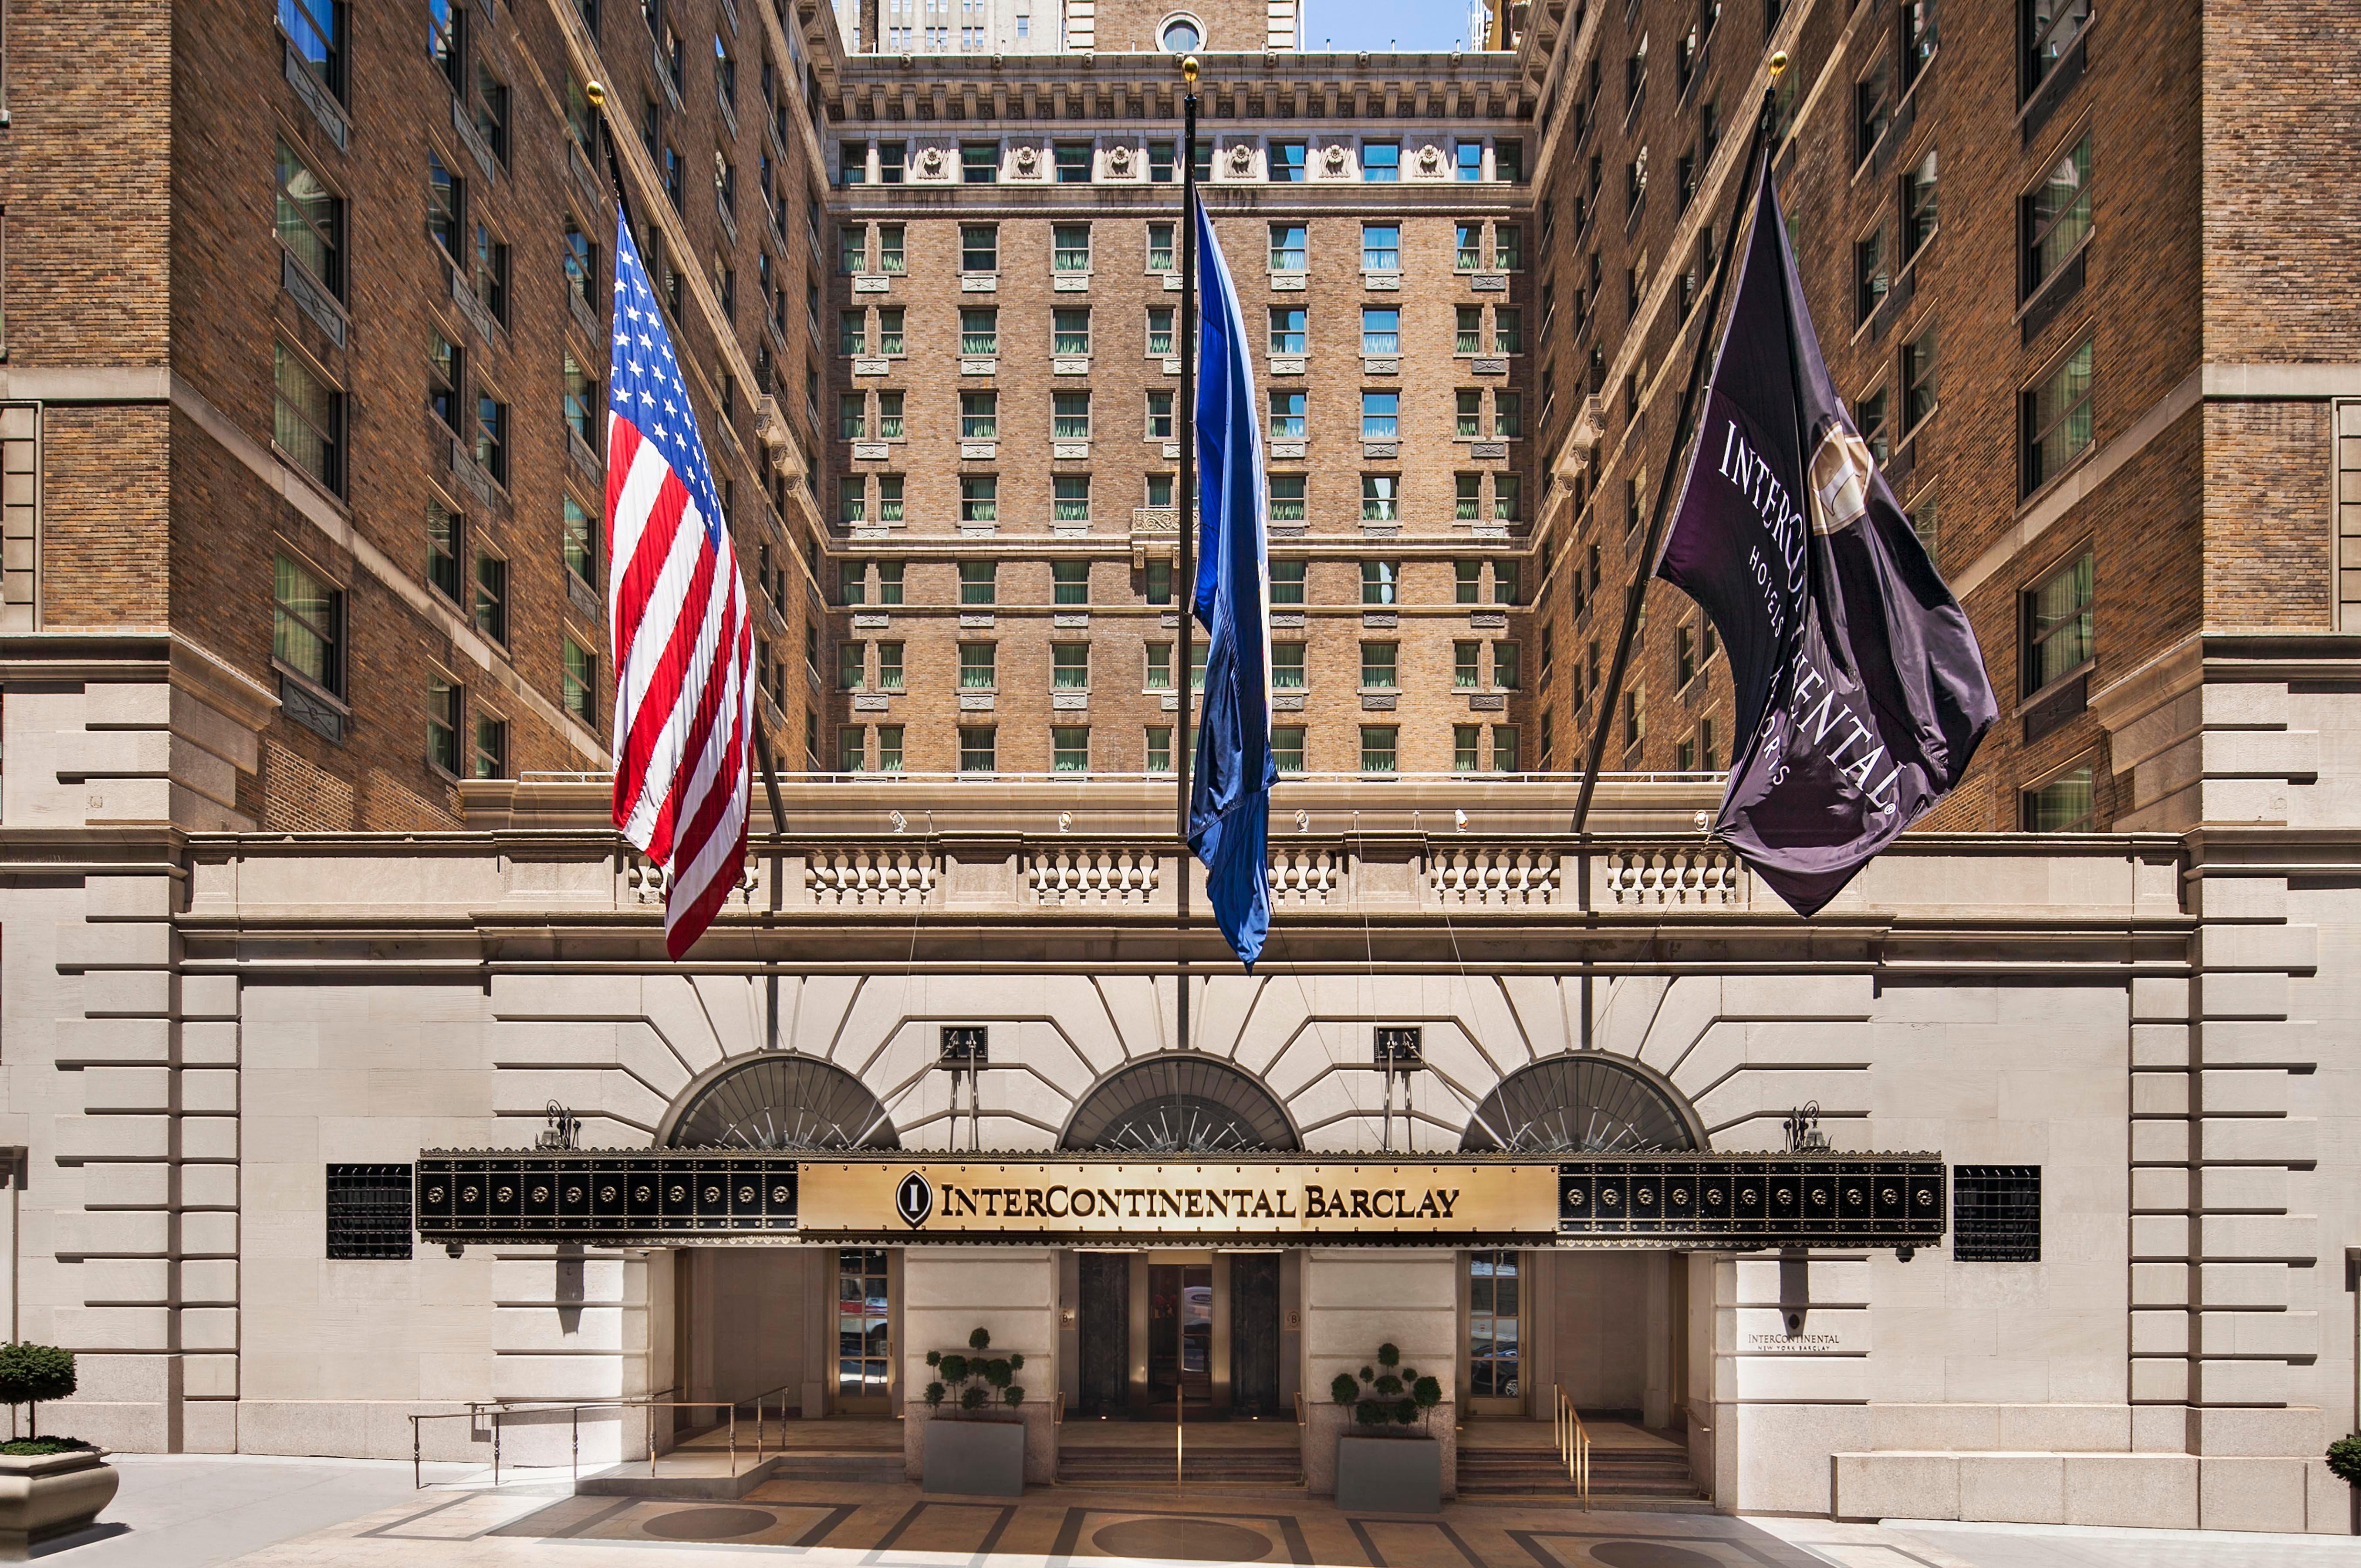 Nếu bạn đang tìm kiếm một trải nghiệm 5 sao trong chuyến đi của mình đến New York, InterContinental New York Barclay Hotel sẽ là sự lựa chọn hoàn hảo. Với thiết kế hài hòa, tiện nghi và dịch vụ chu đáo, khách sạn sẽ mang đến cho bạn cảm giác thư thái và sang trọng đích thực.